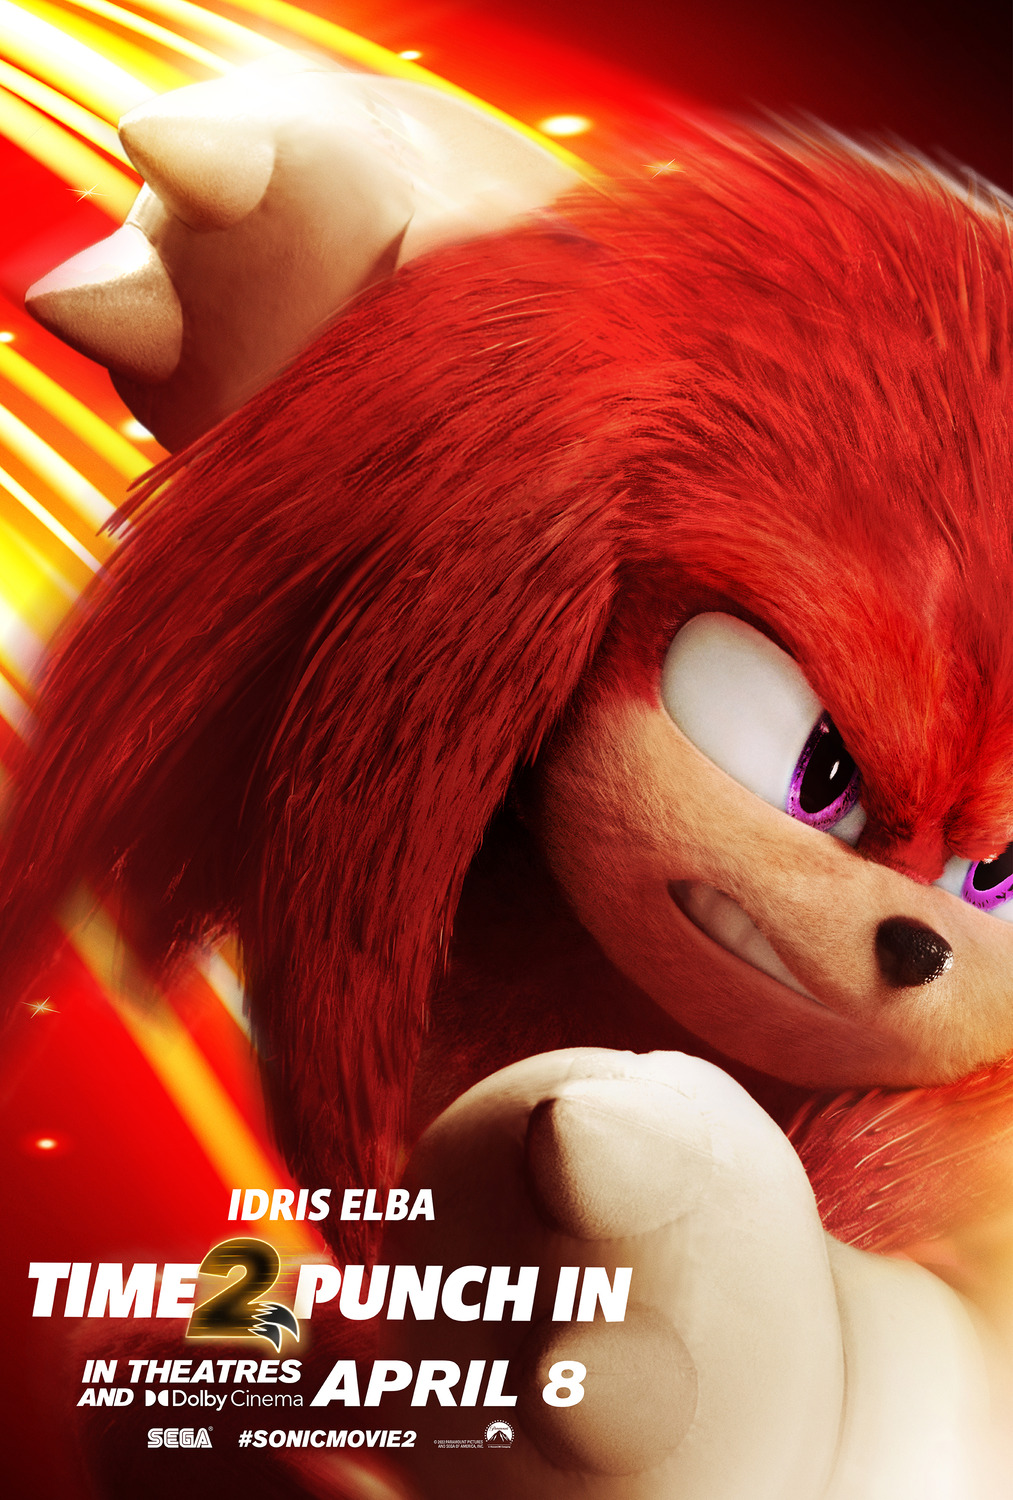 Sonic 2”: Trailer final do filme é divulgado - POPline